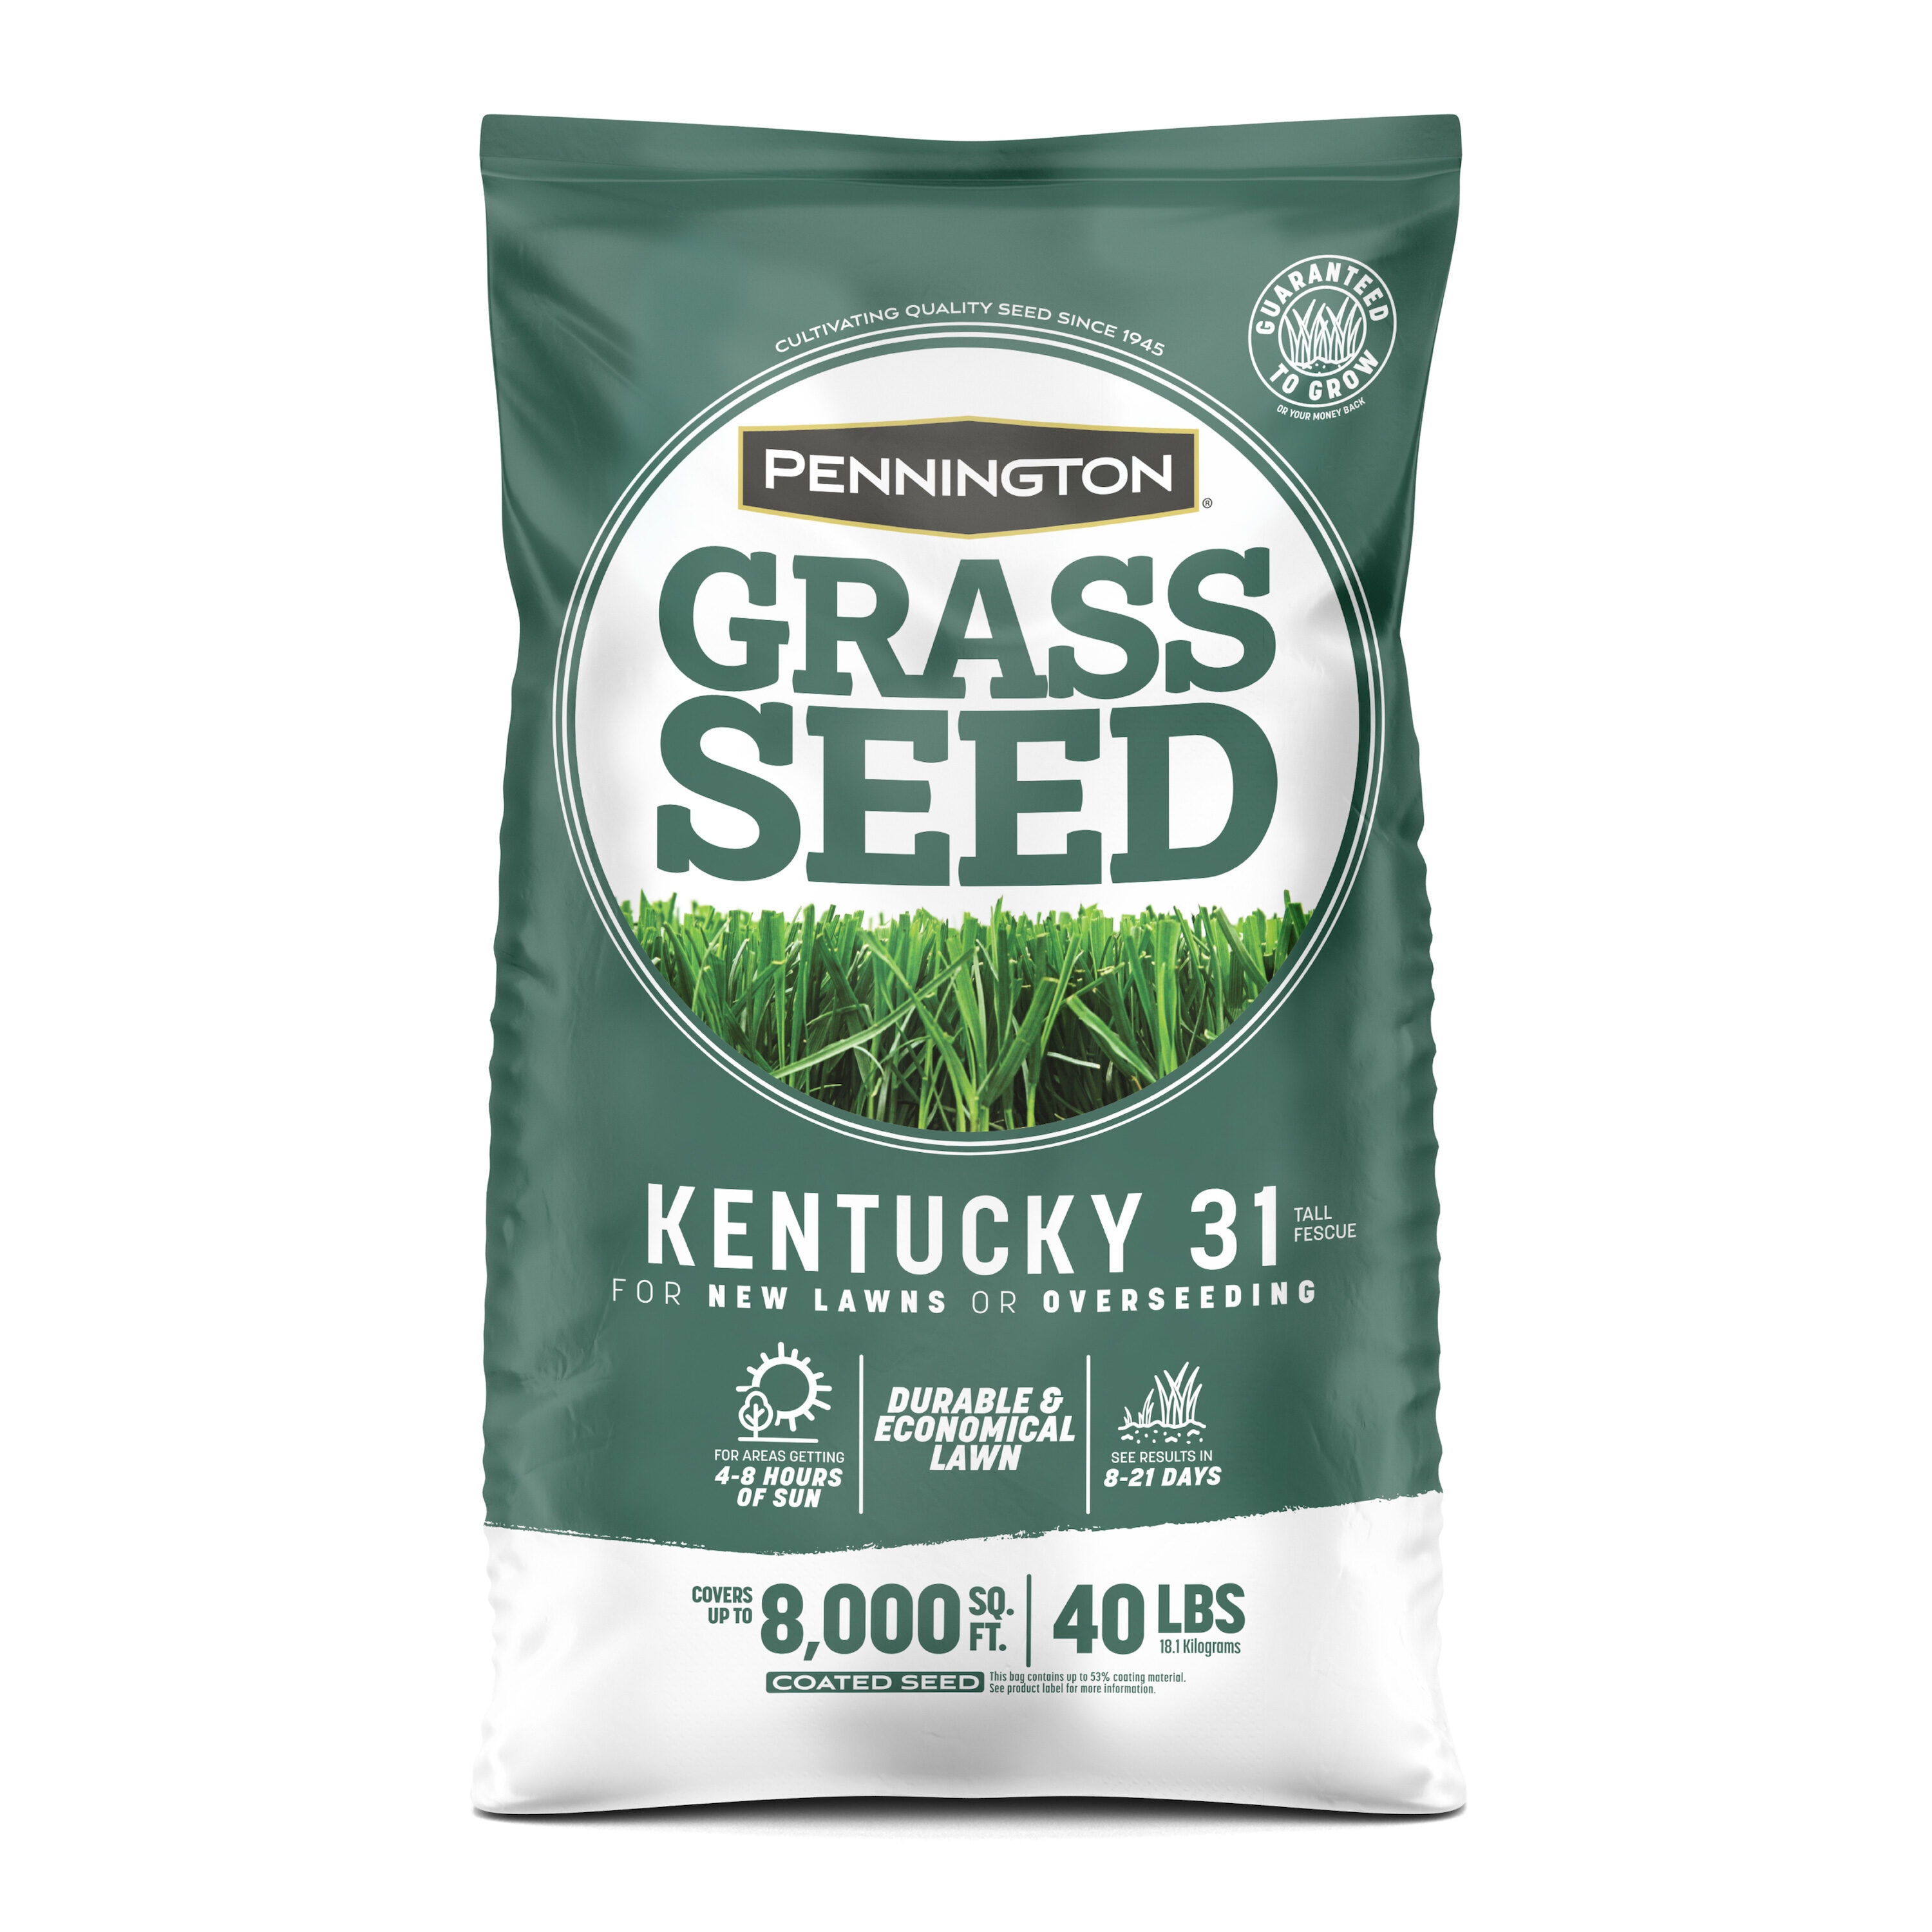 Kentucky 31 Grass Seed at